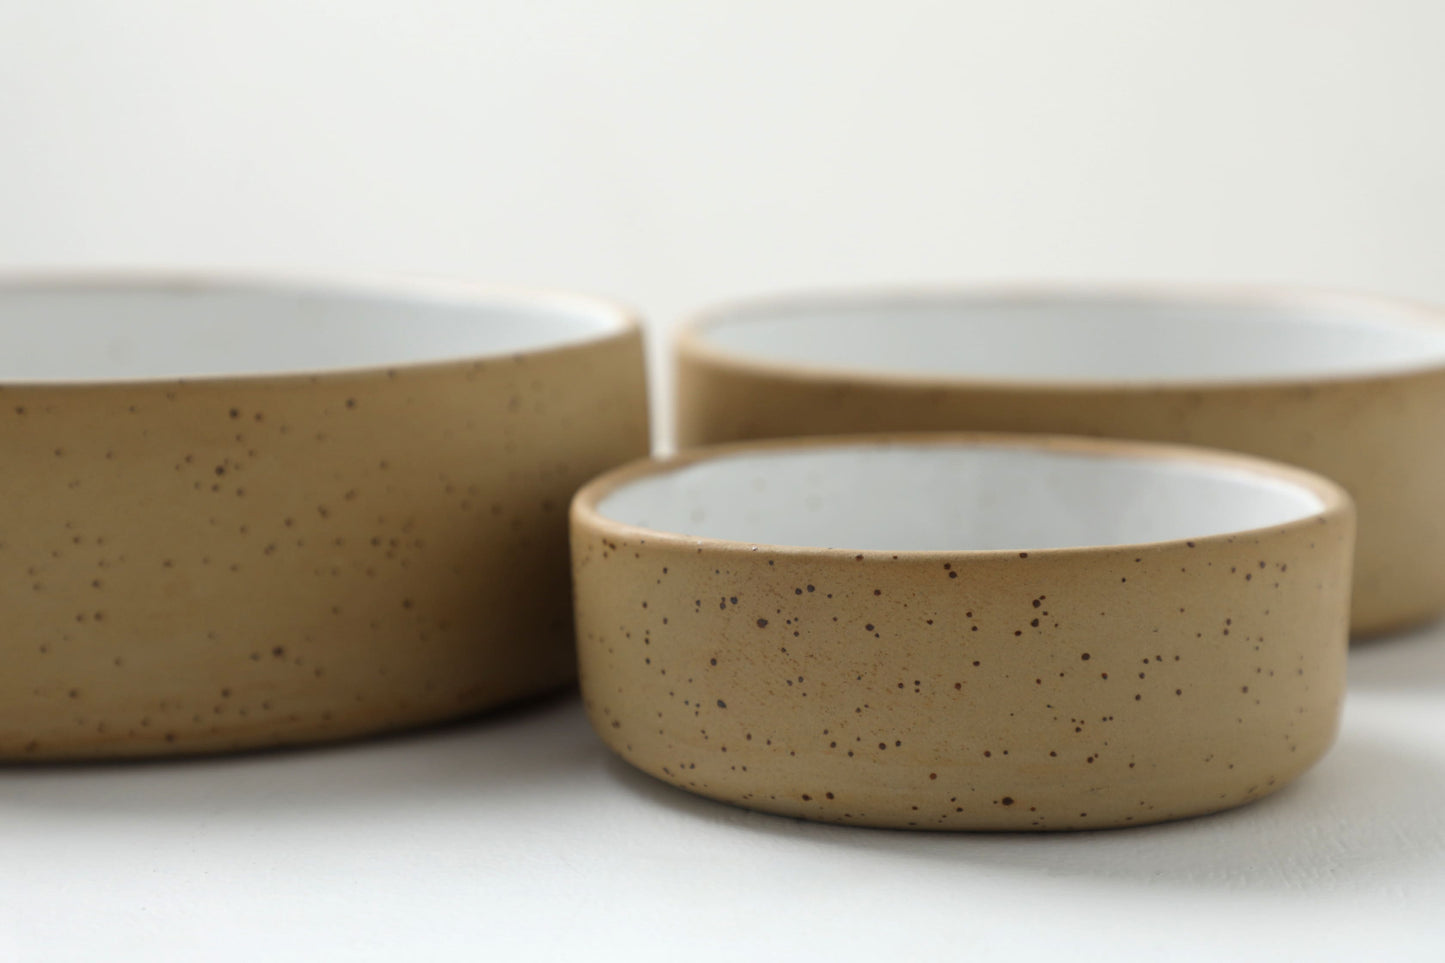 Handmade ceramic dog bowls | RAW+WHITE - premium dog goods handmade in Europe by animalistus